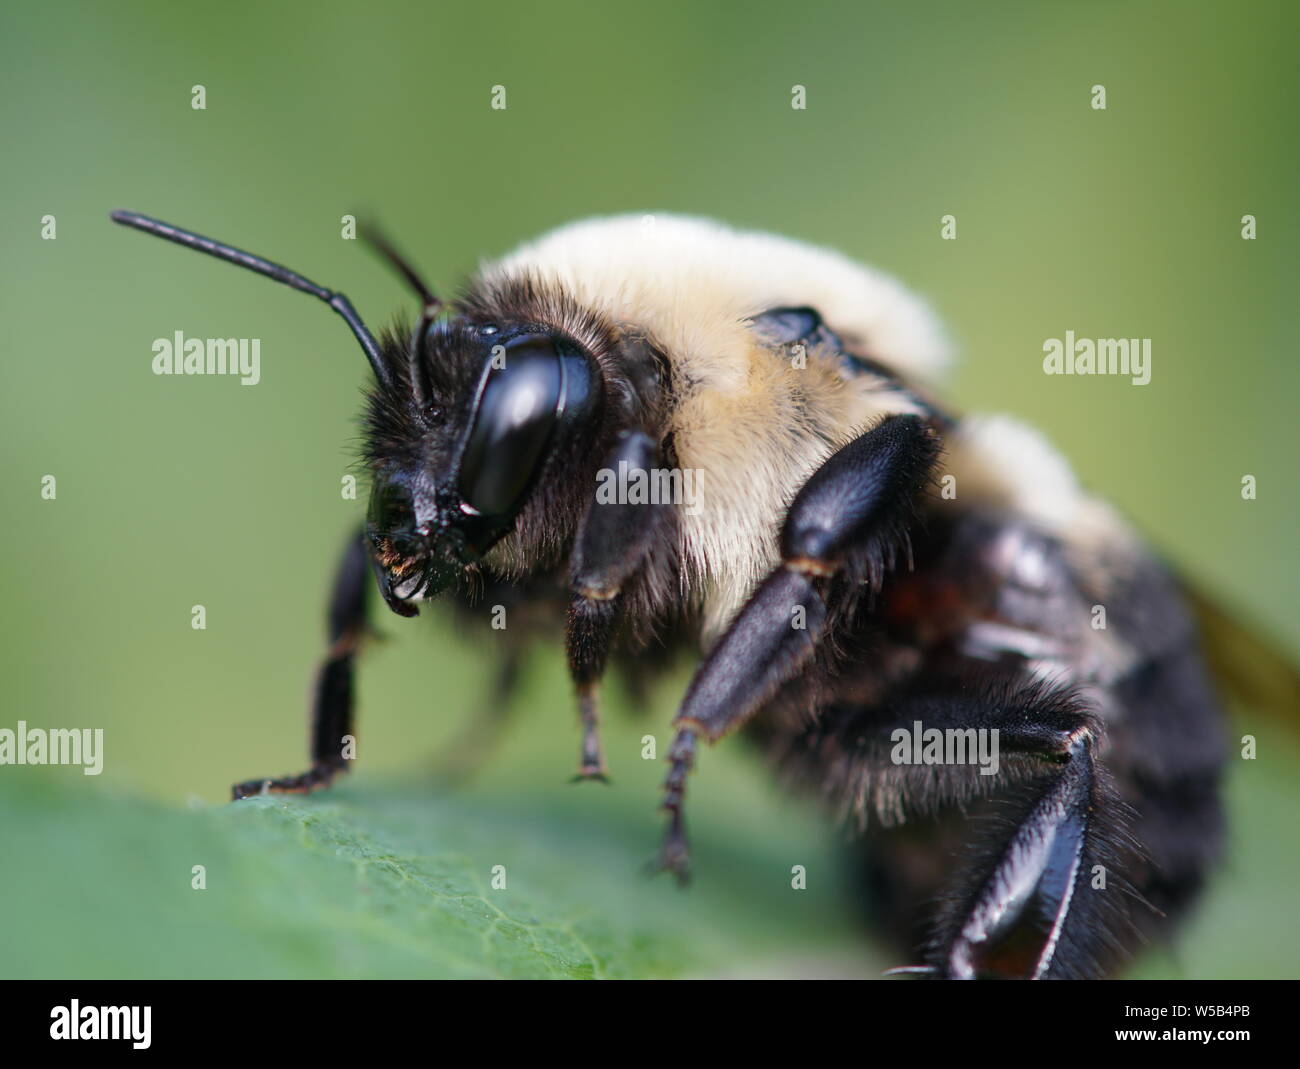 Miel de abejas despertando de su sueño Foto de stock